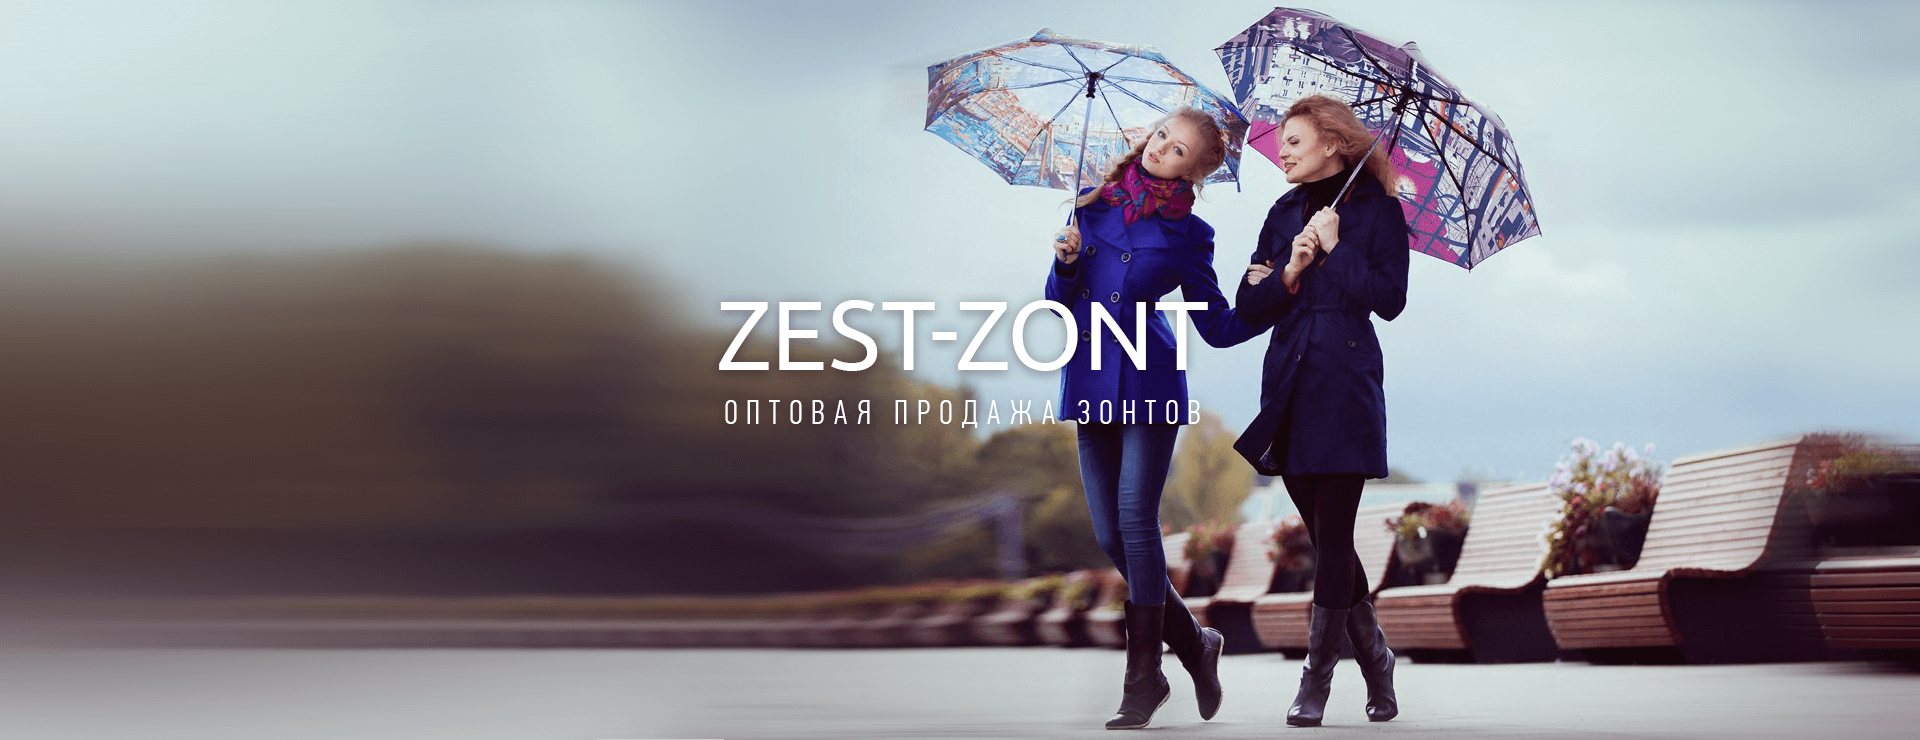 Разработка сайта фабрике зонтов «Zest»